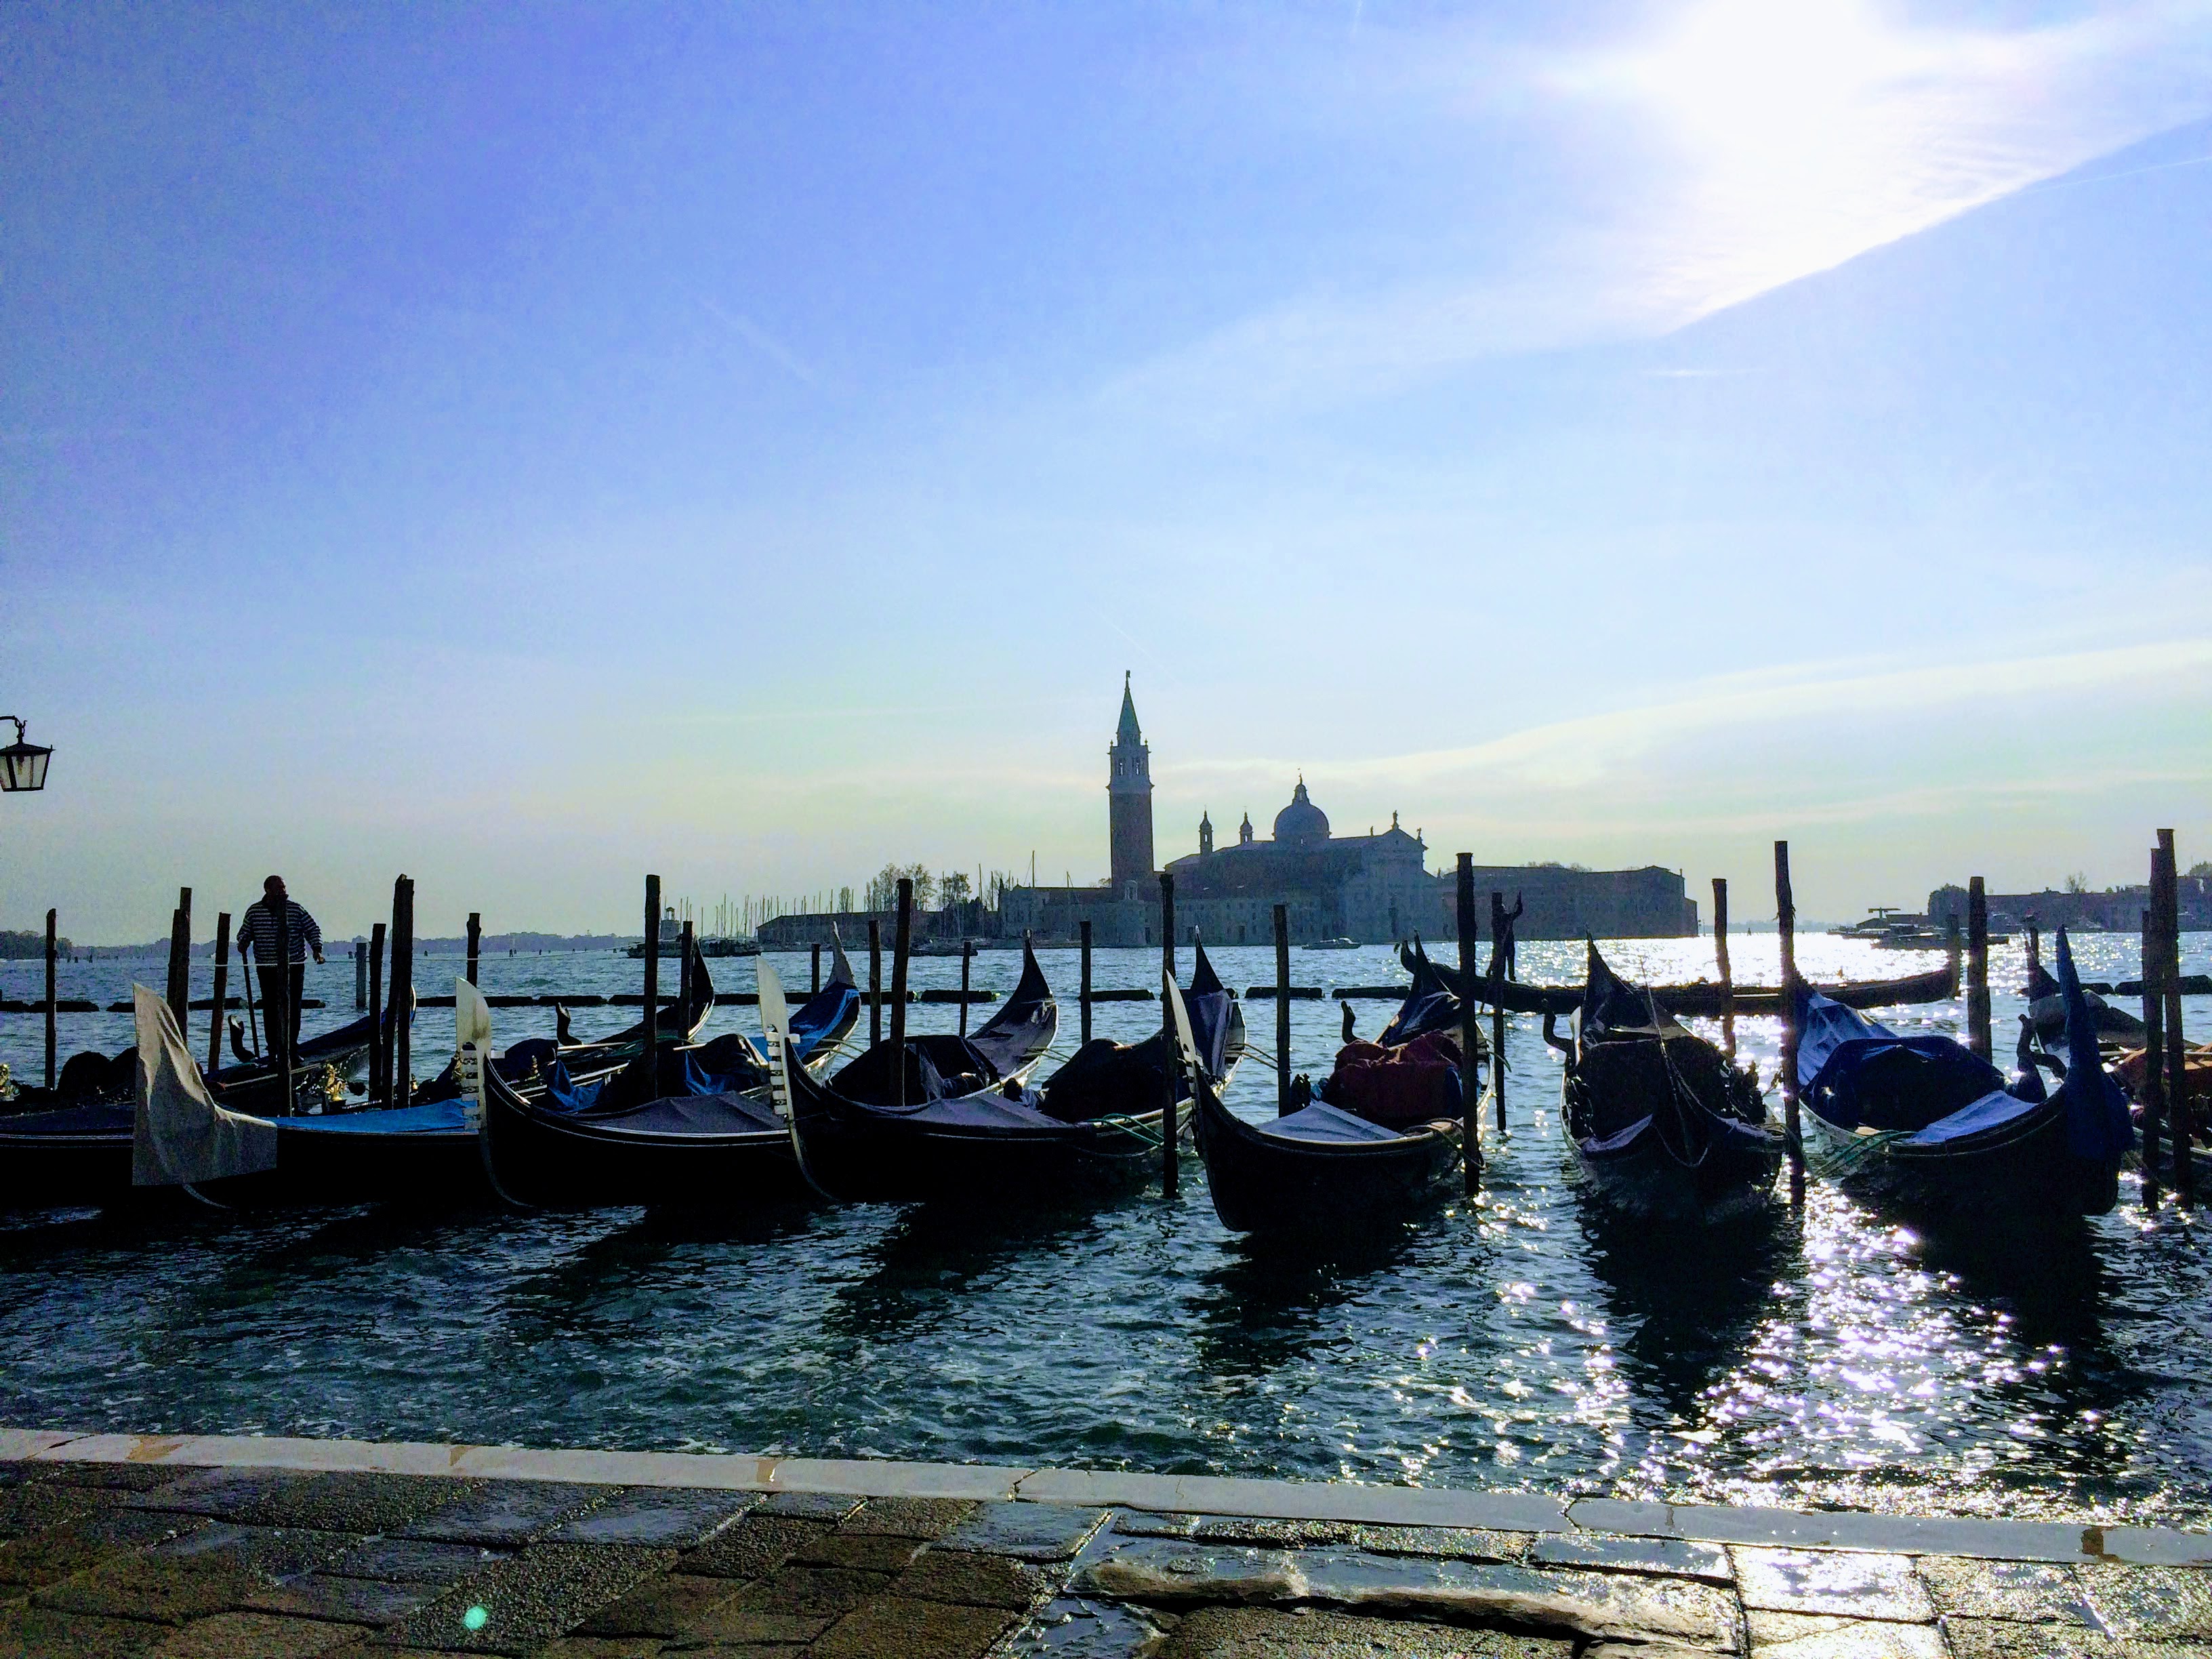 Boats in Venice, Italy.